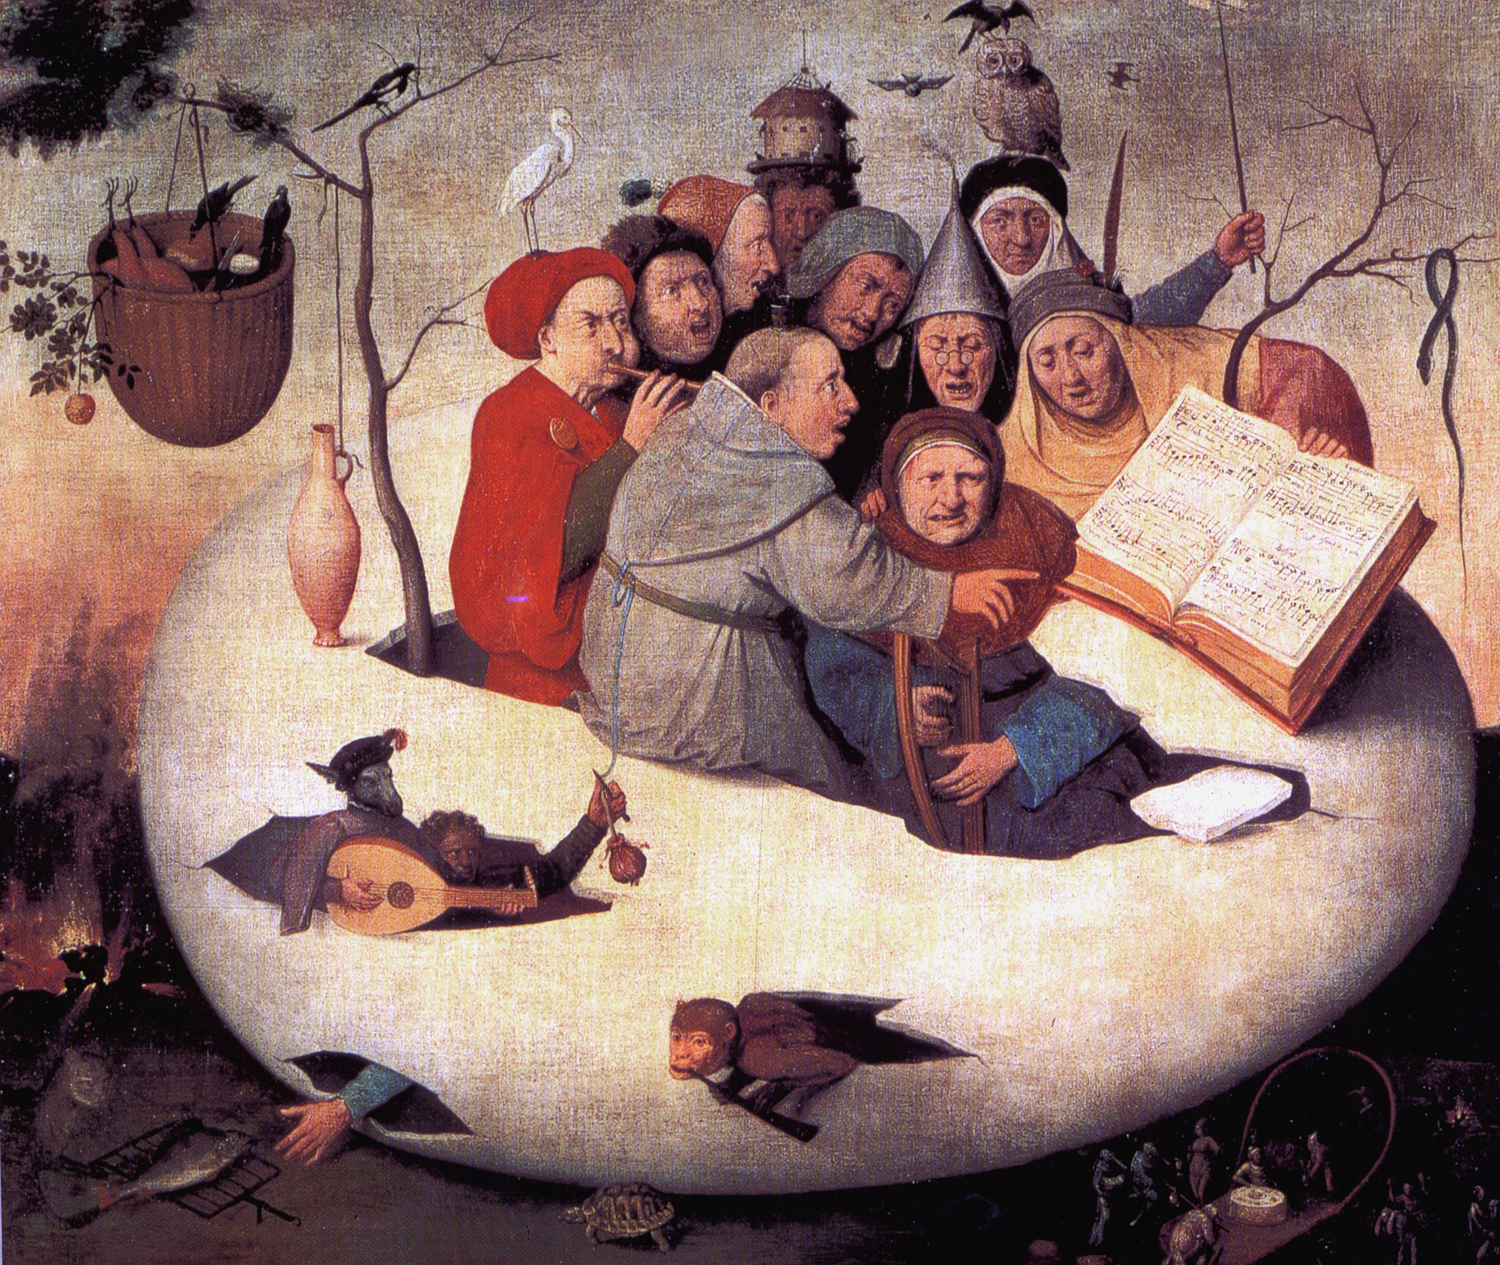 Concierto en el huevo by Seguidor de Hieronymus Bosch  - 1561 - 108 cm × 126.5 cm Palais des Beaux-Arts de Lille